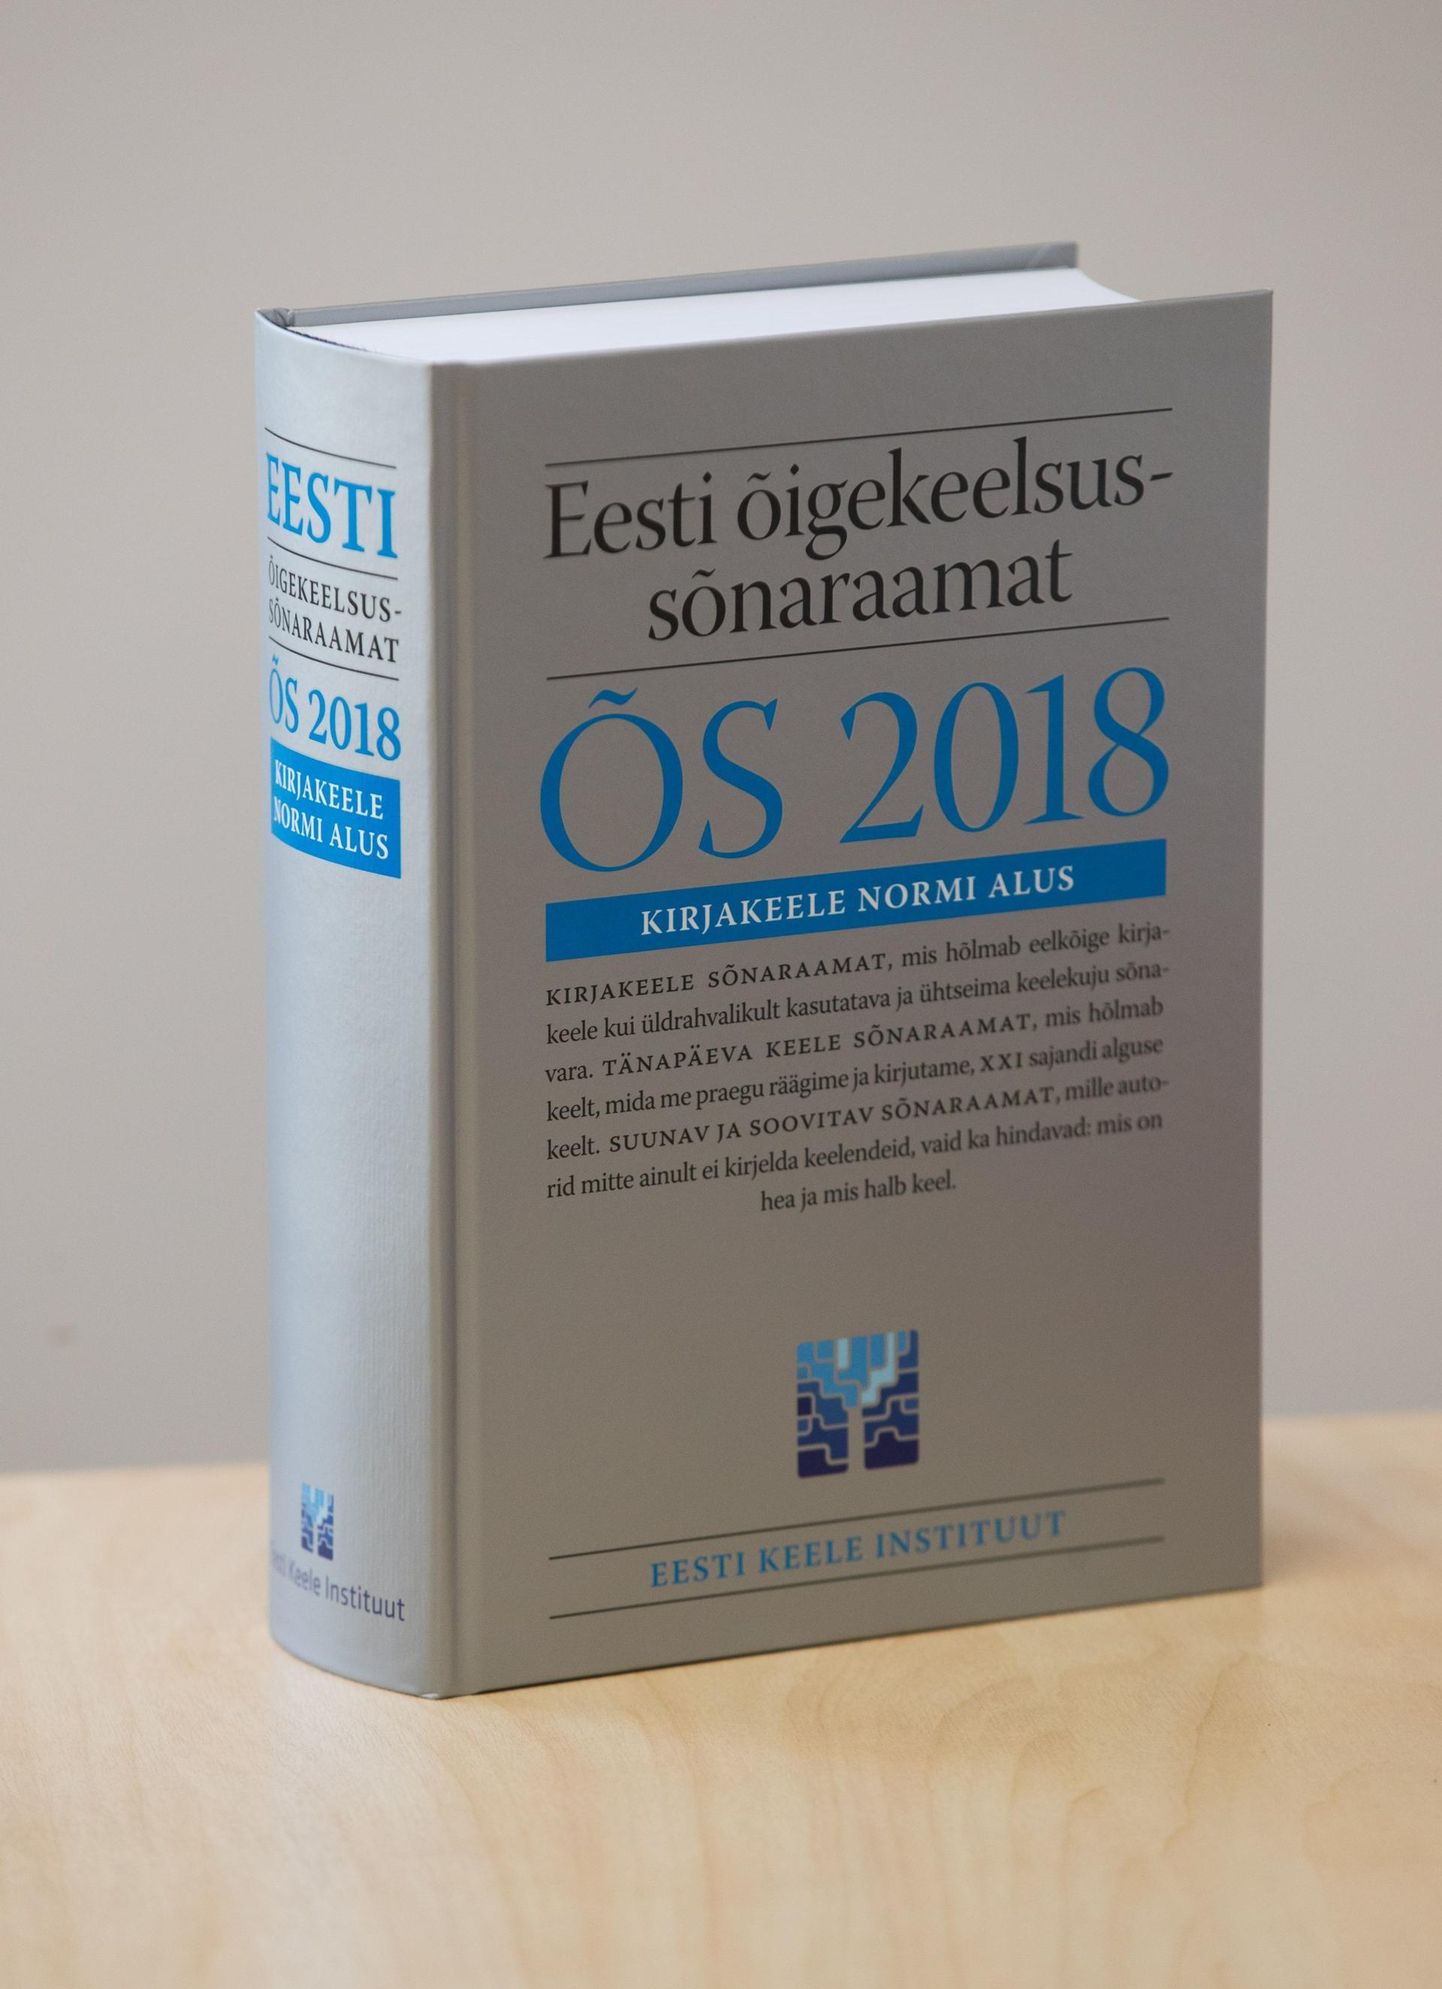 Eesti sai juurde neli kutselist keeletoimetajat